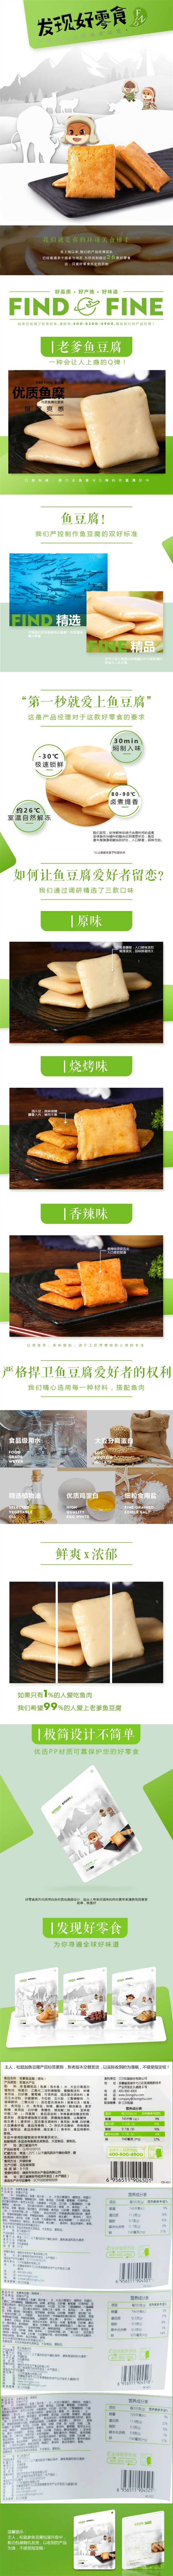 fish tofu 180gx2